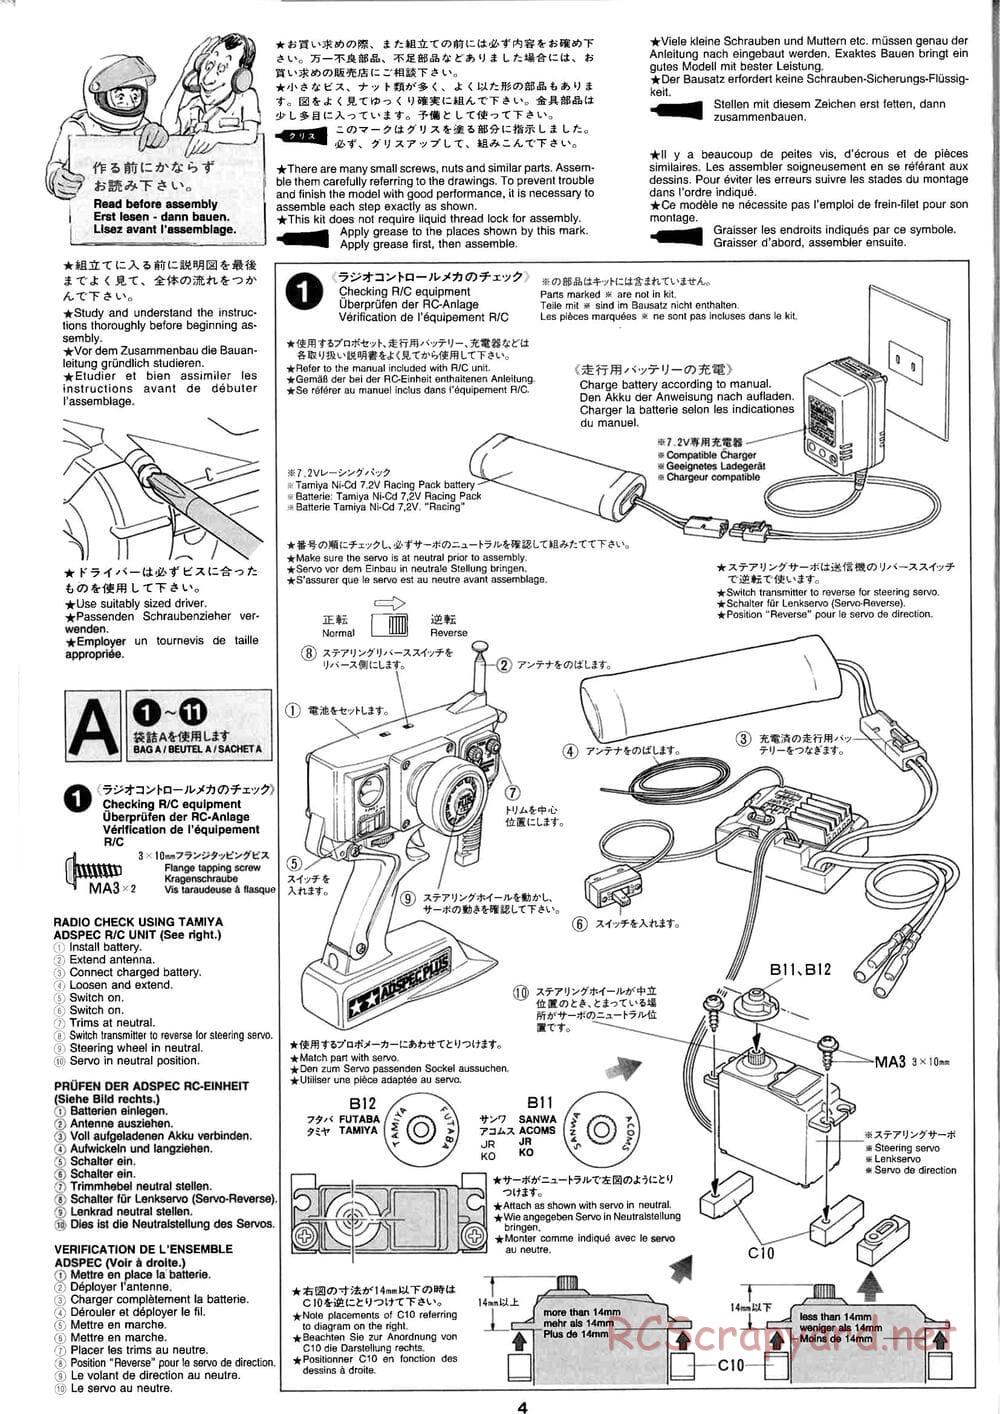 Tamiya - Baja Champ - TL-01B Chassis - Manual - Page 4